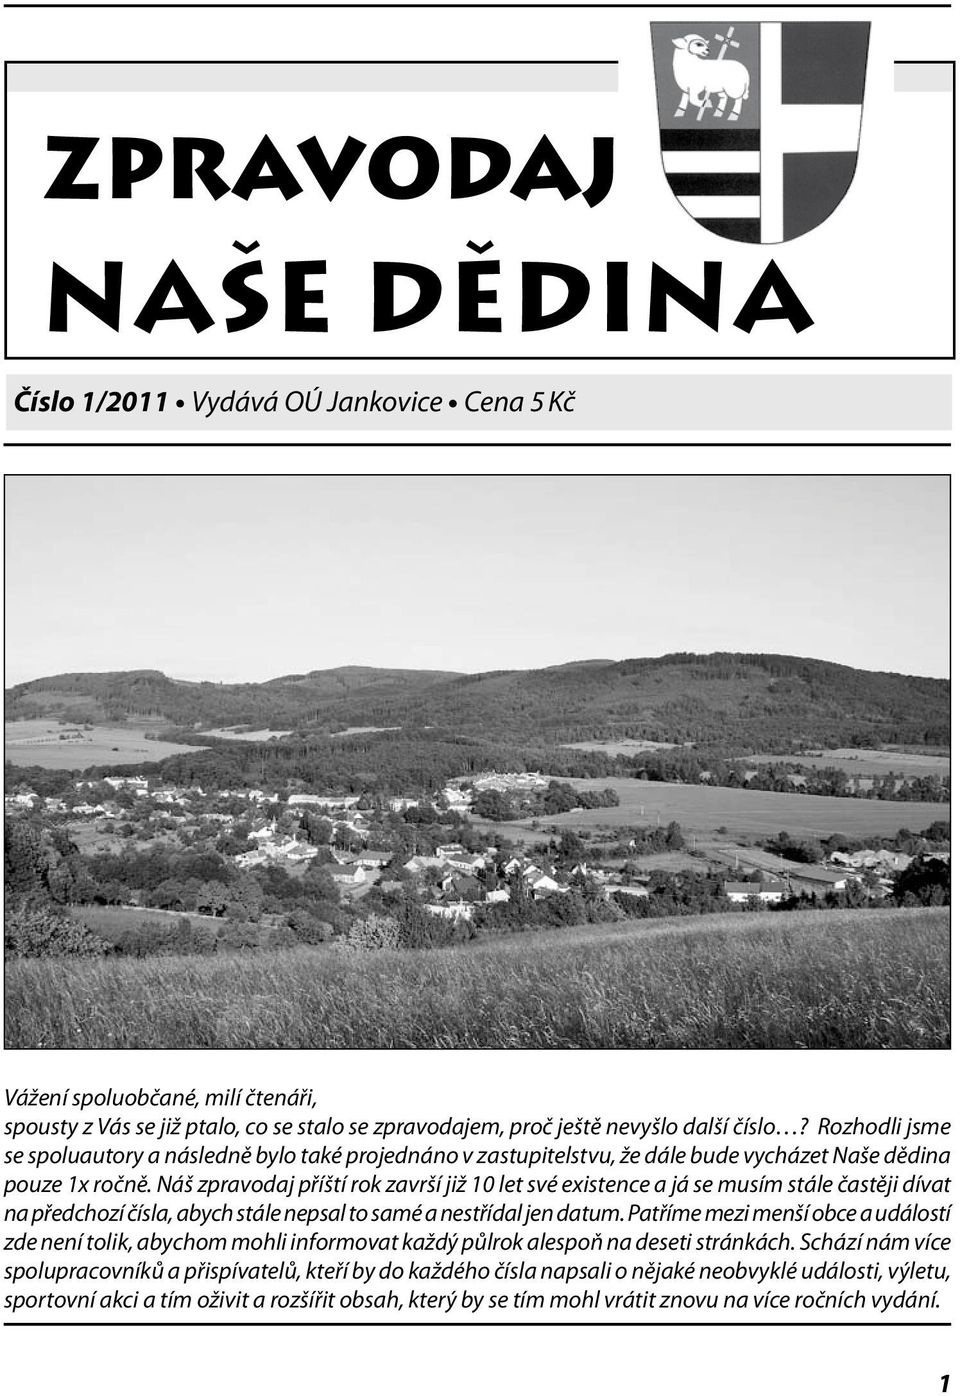 Naše dědina. Zpravodaj. Číslo 1/2011 Vydává OÚ Jankovice Cena 5 Kč - PDF  Free Download